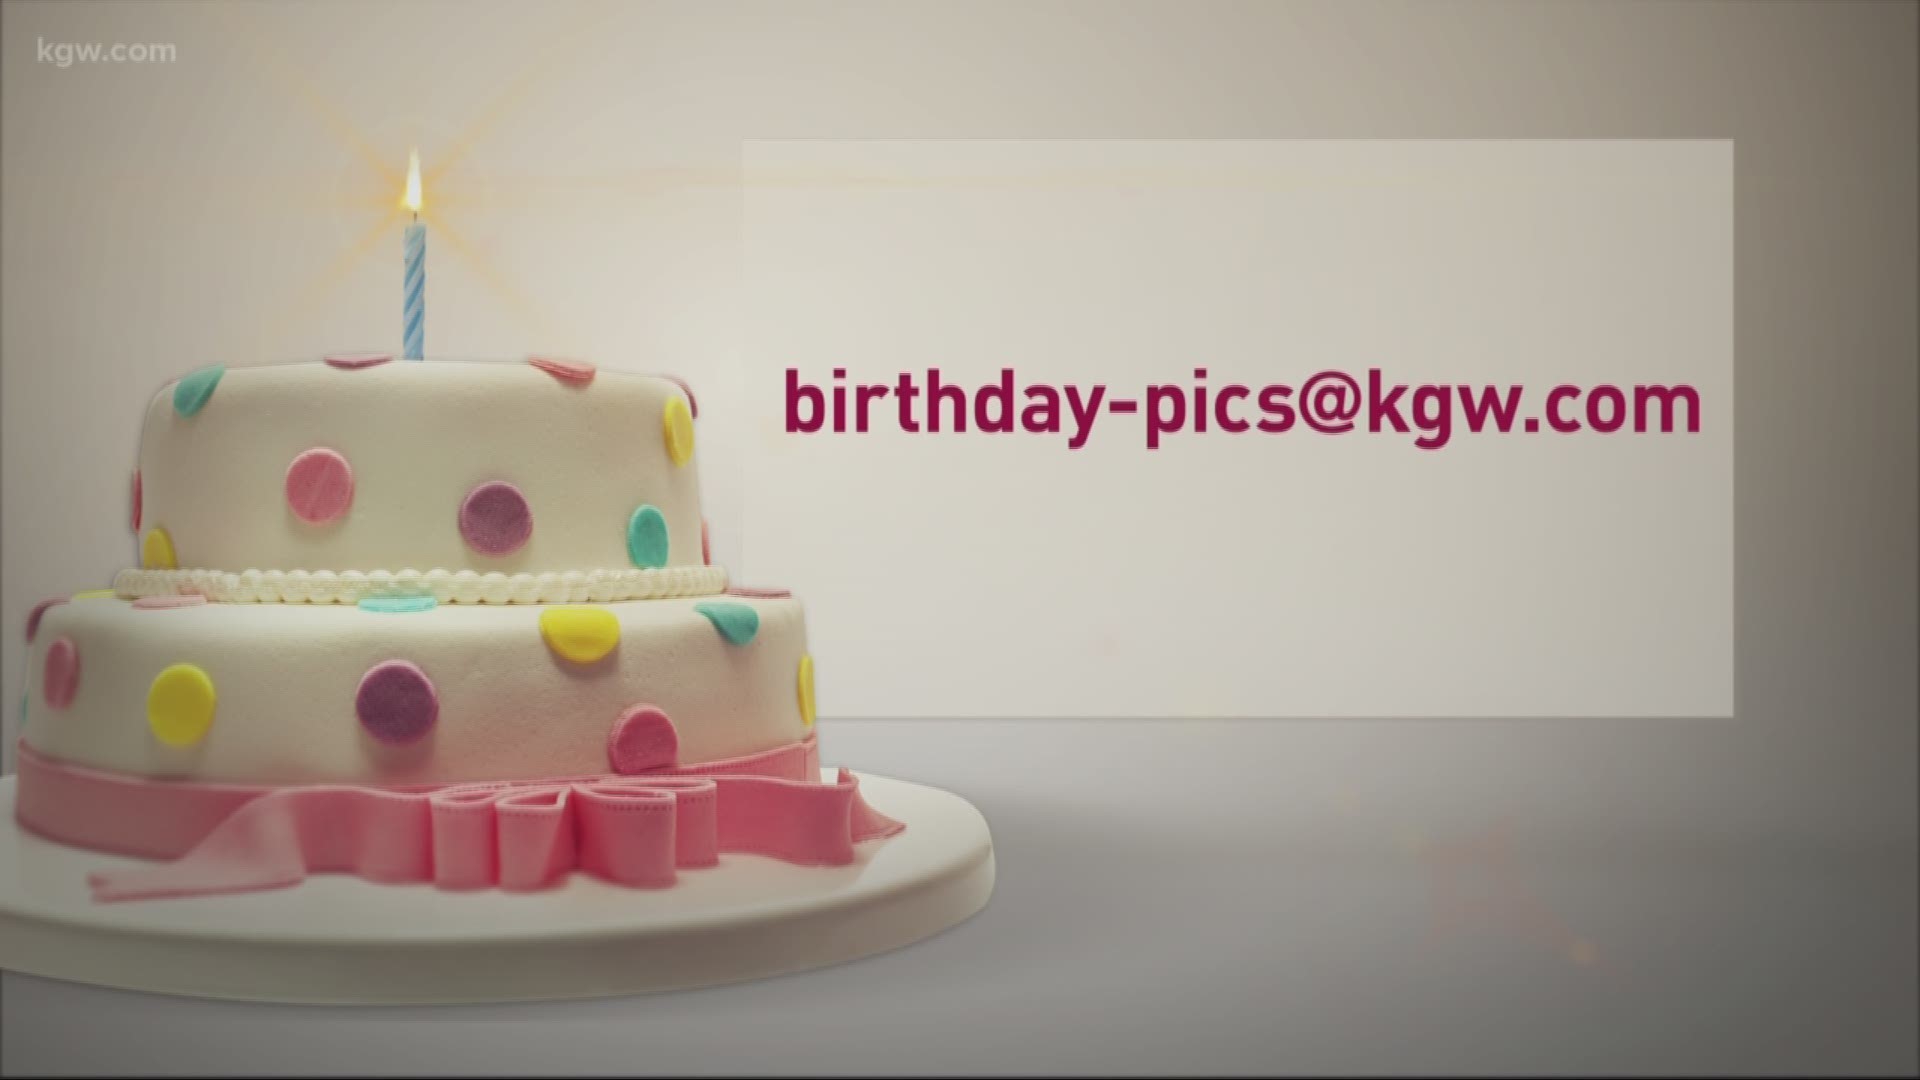 KGW viewer birthdays: 3-22-18